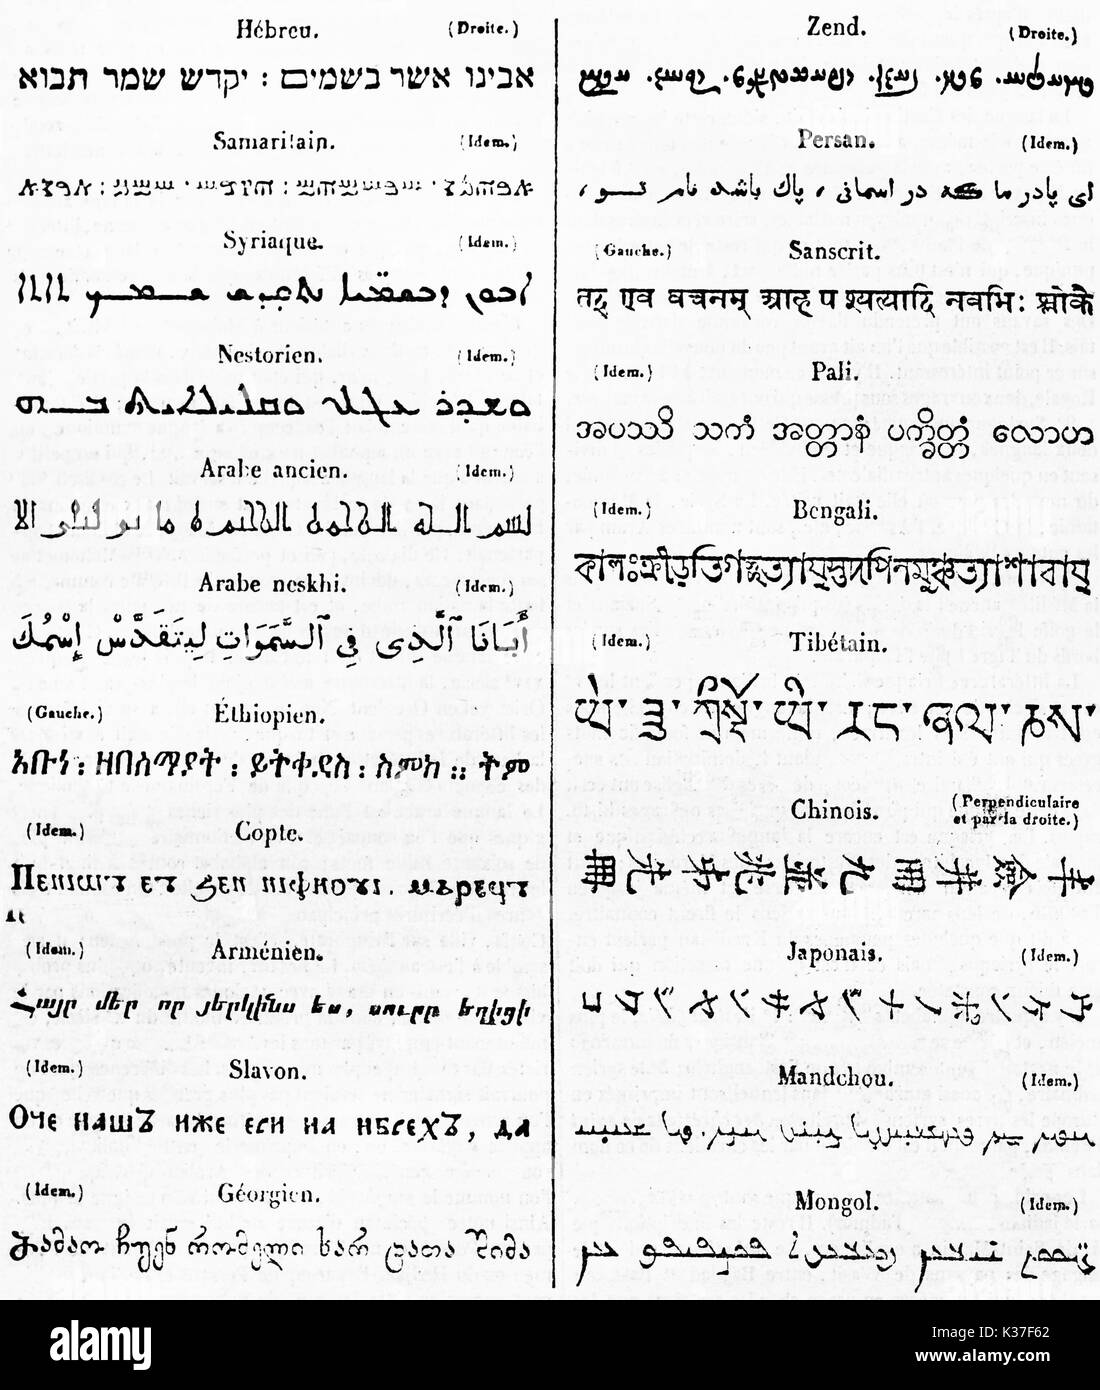 Antica tabella elenco degli alfabeti esotici, font nero su carta bianca. Pubblicato il Magasin pittoresco Parigi 1834 Foto Stock